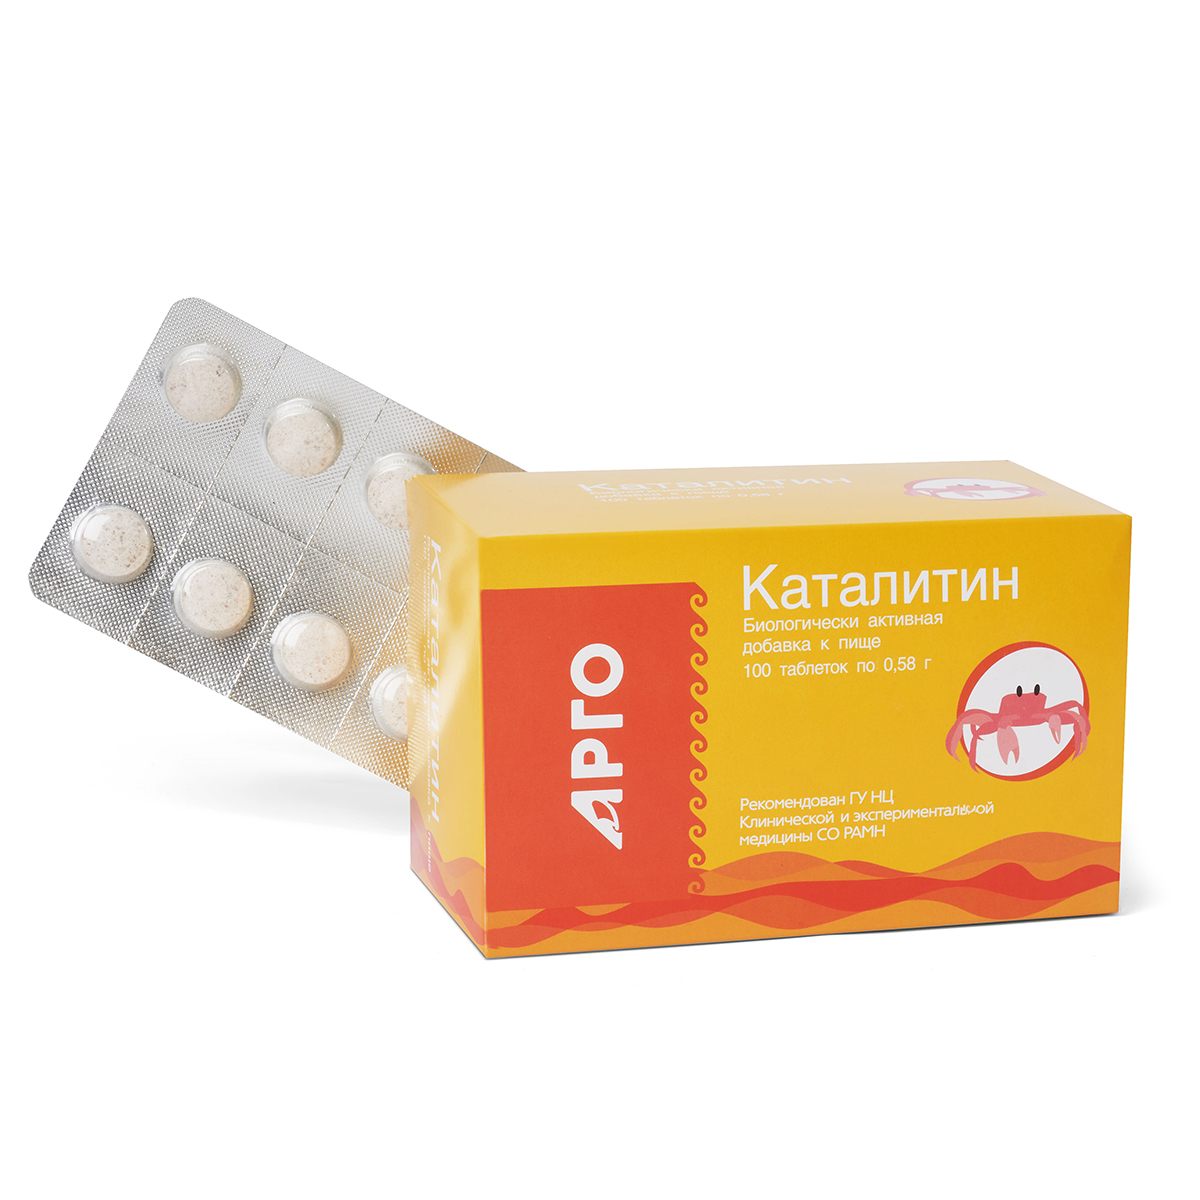 Каталитин 100 таблеток от Апифарм